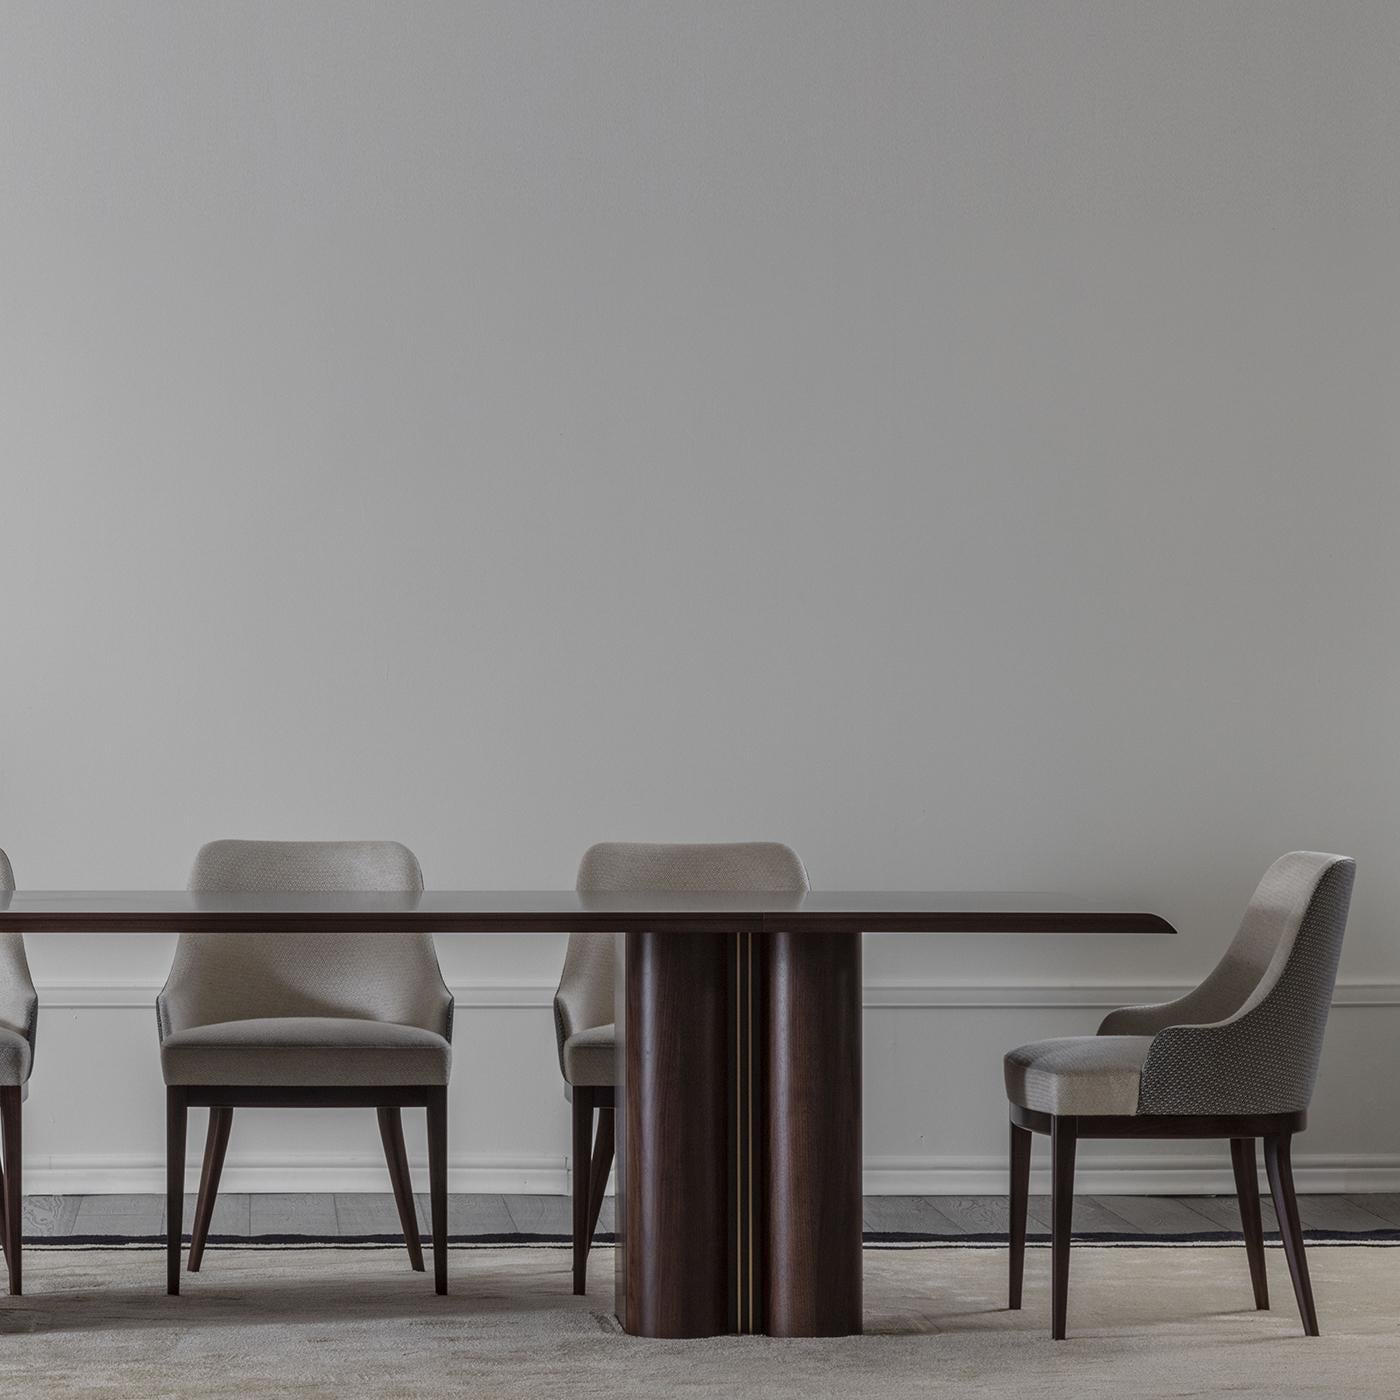 Des finitions splendides et une touche de modernité font de cette table un superbe ajout à un espace contemporain intérieur ou extérieur. Finie dans une élégante teinte tabac mat, cette table est fabriquée en noyer massif, comprenant deux pieds